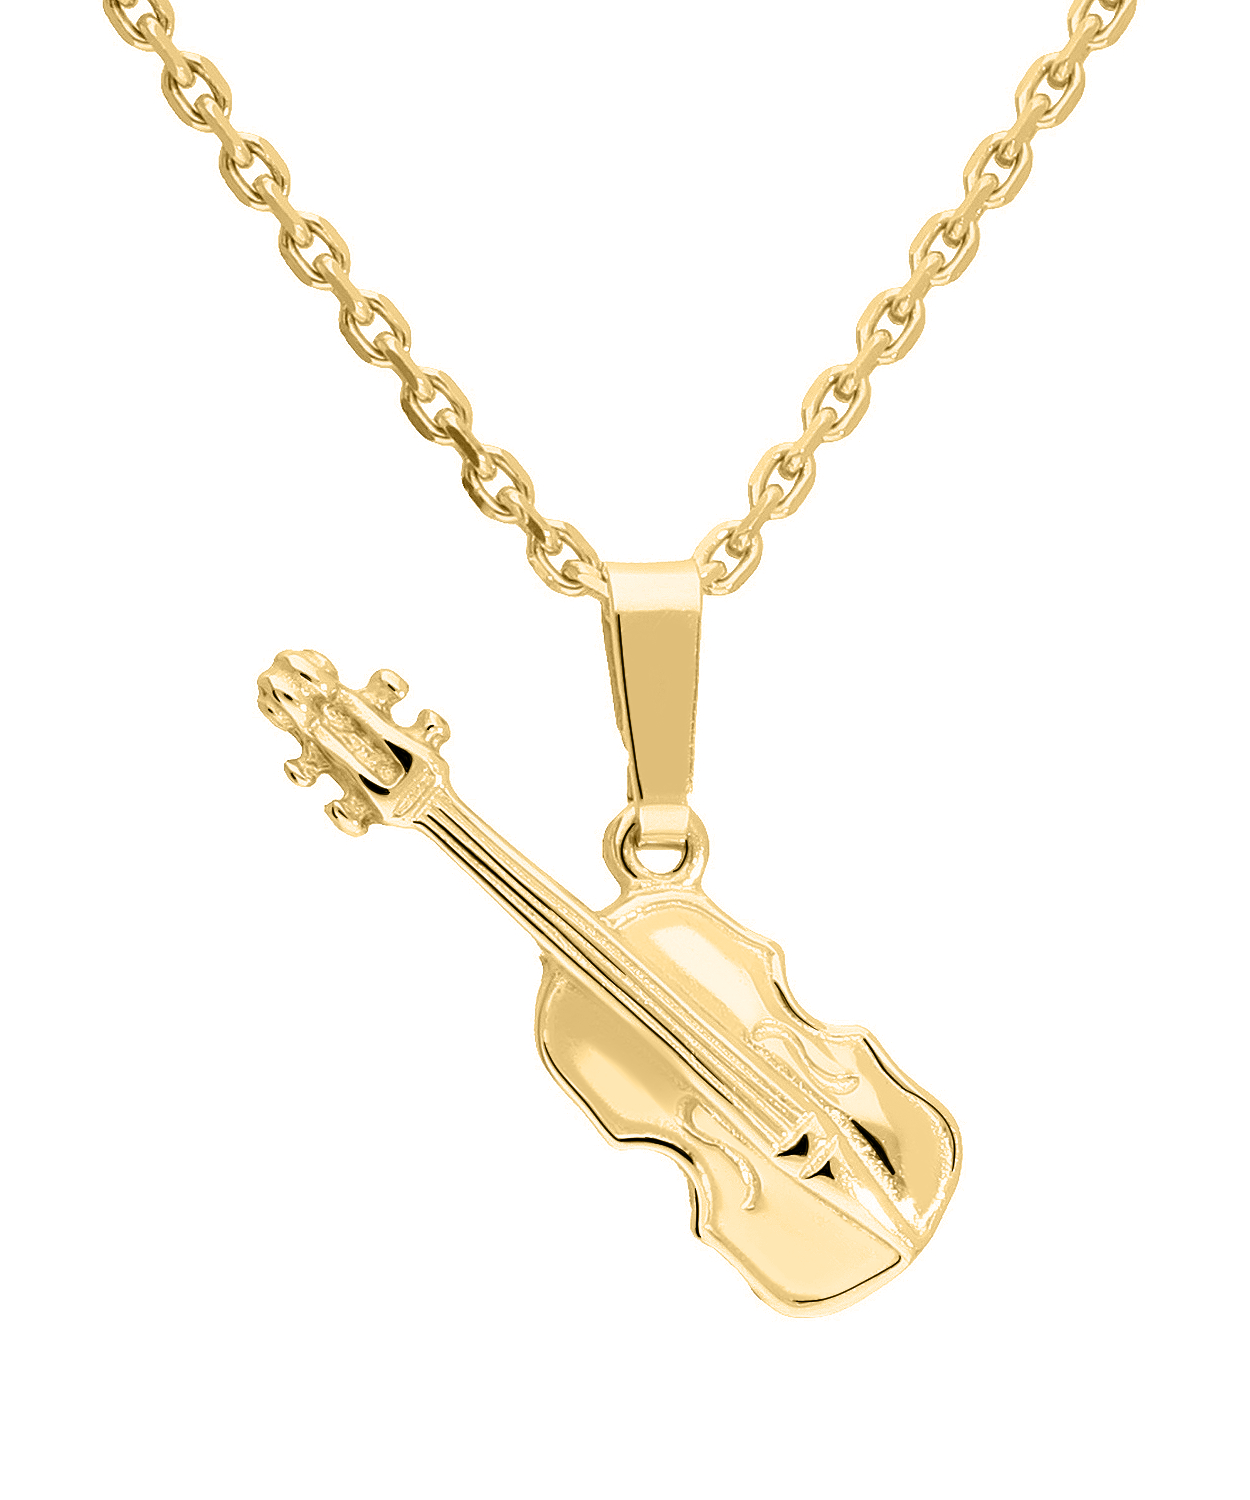 Instrument - Violine Cello Motivanhänger 585 Gold